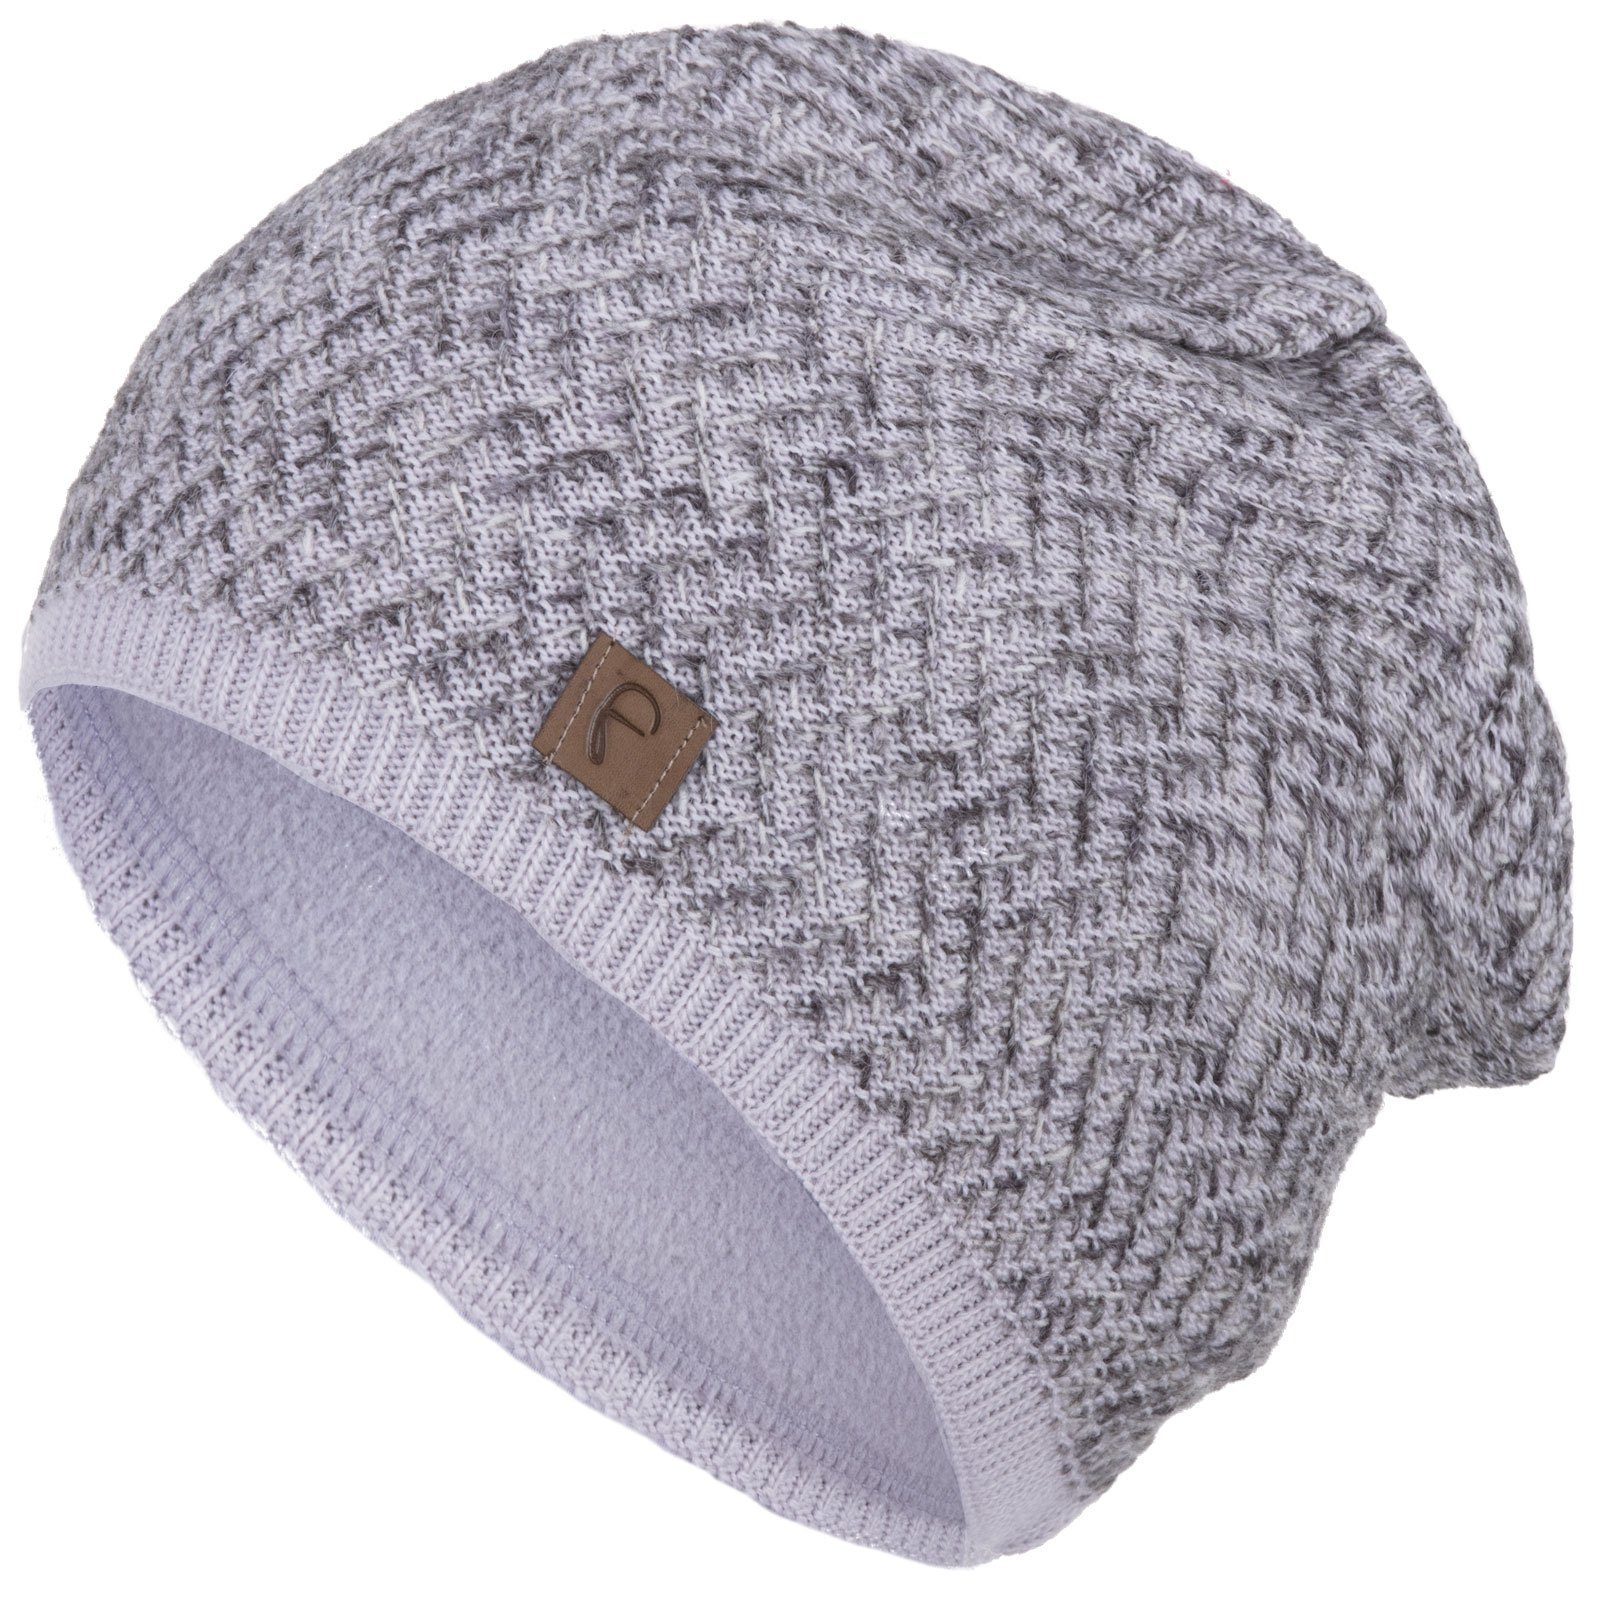 Slouchy Beanie-Mütze Skimütze Winter grob Oversize SOMALER Strickmütze für Damen